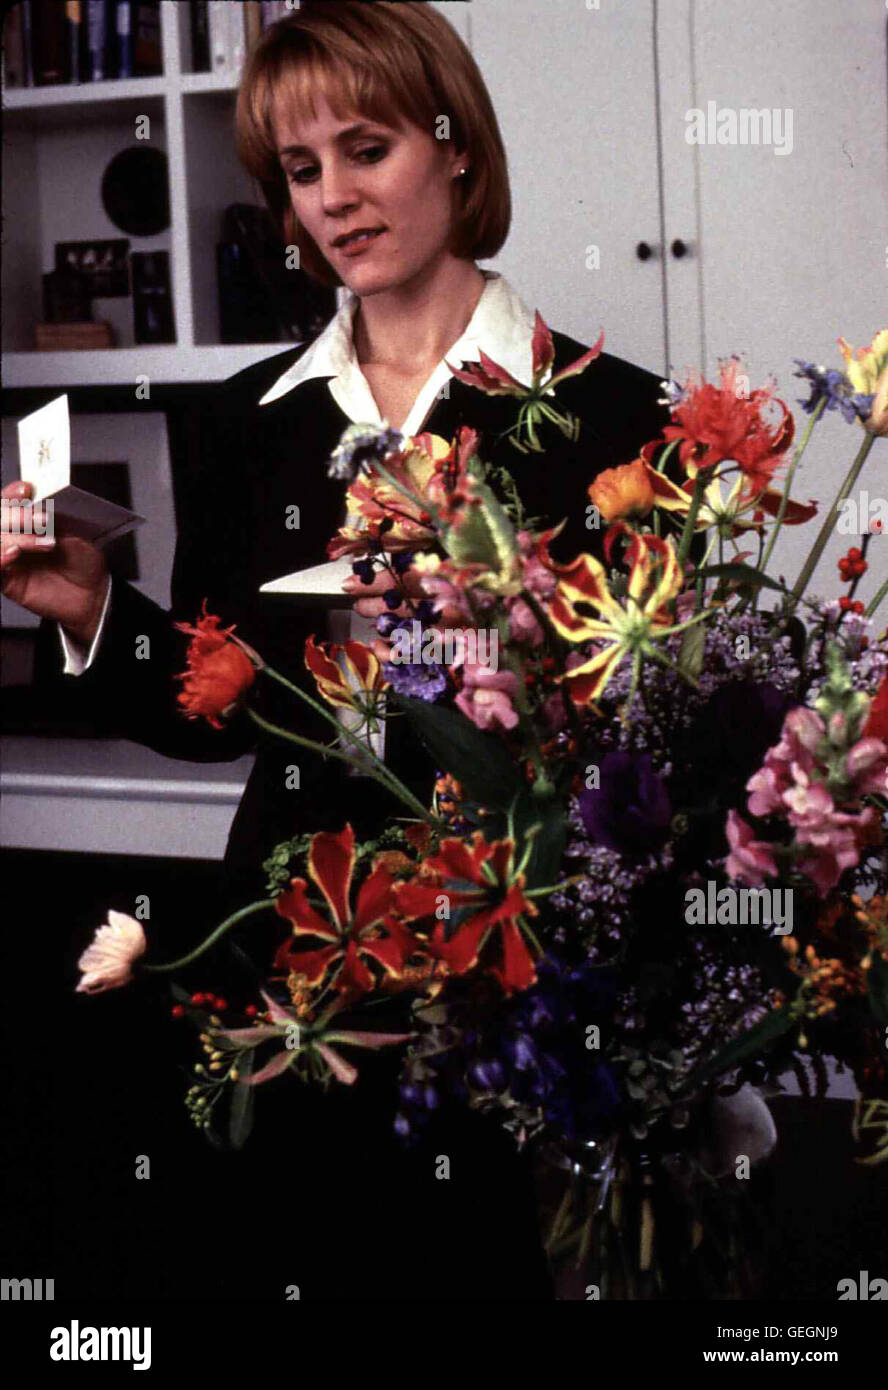 Mary Stuart Masterson   Lisa (Mary Stuart Masterson) arbeitet in einer Bank und hat wenig Zeit fürs Privatleben. Eines Tages bekommt sie Blumen von Unbekannt. *** Local Caption *** 1995, Bed Of Roses, Das Rosenbett Stock Photo